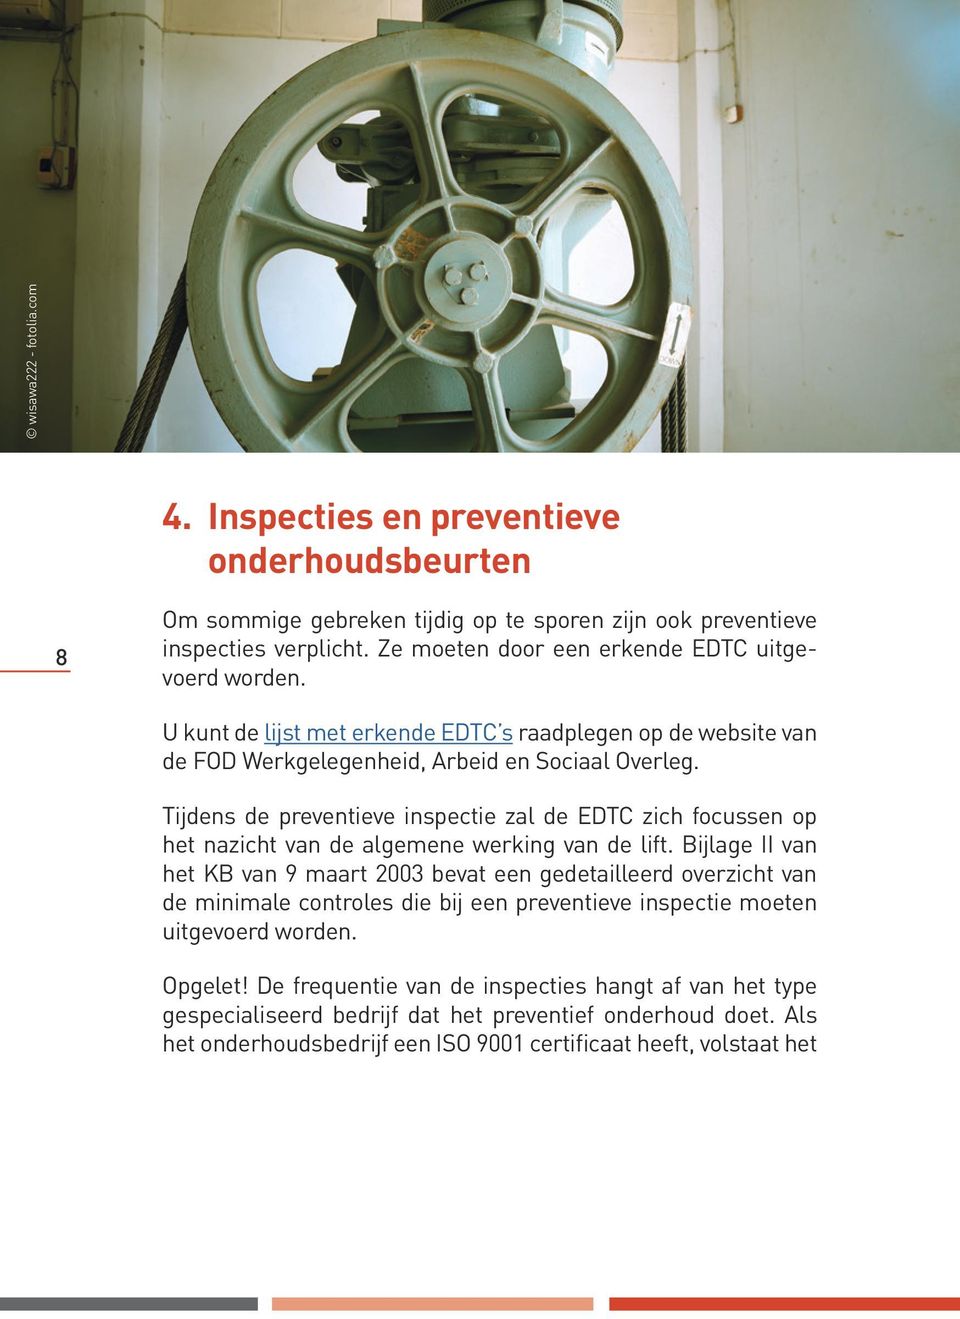 Tijdens de preventieve inspectie zal de EDTC zich focussen op het nazicht van de algemene werking van de lift.